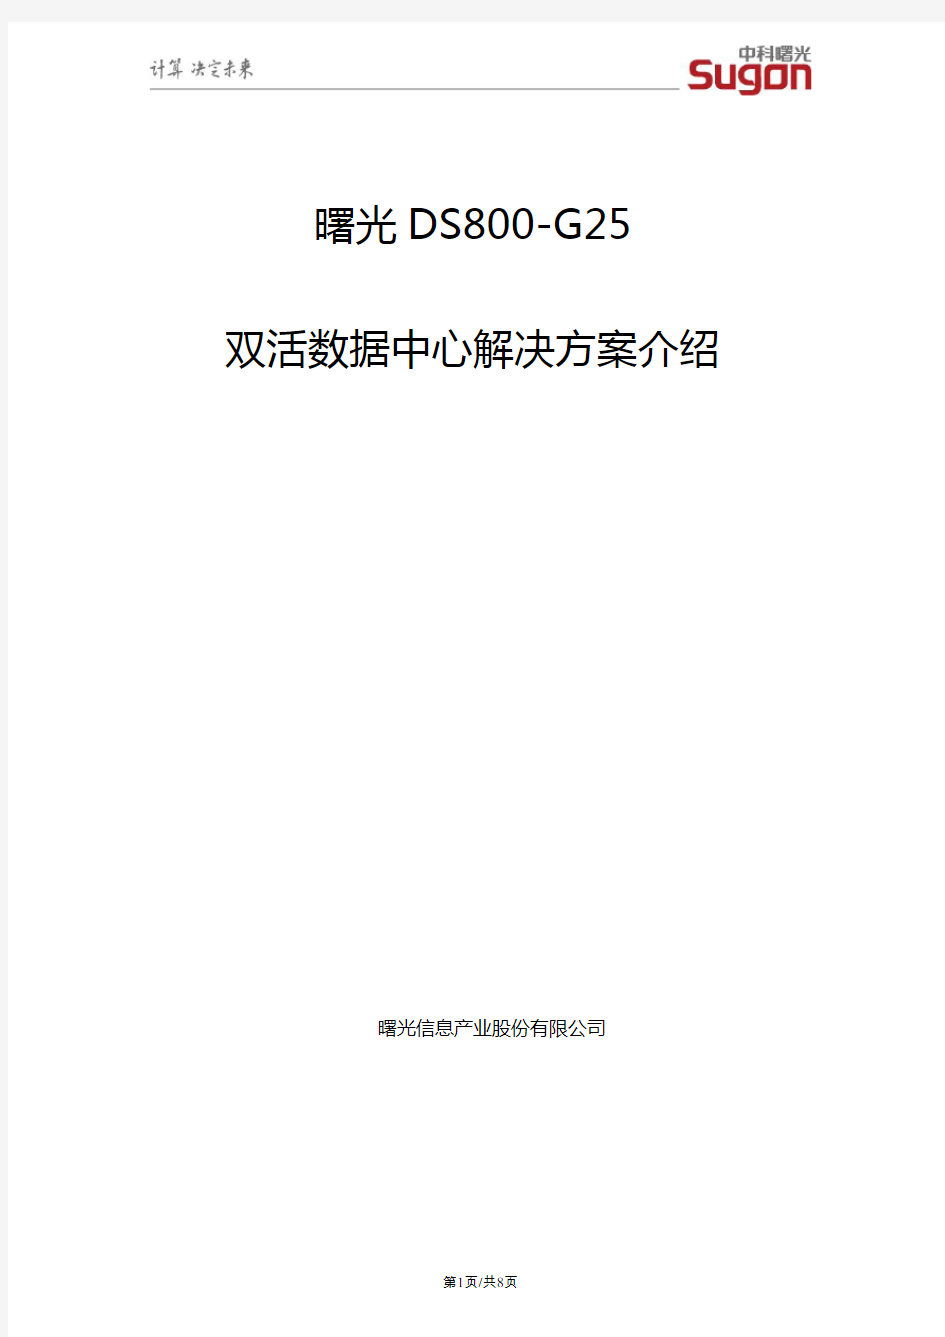 曙光DS800-G25双活数据中心解决方案介绍V1.1